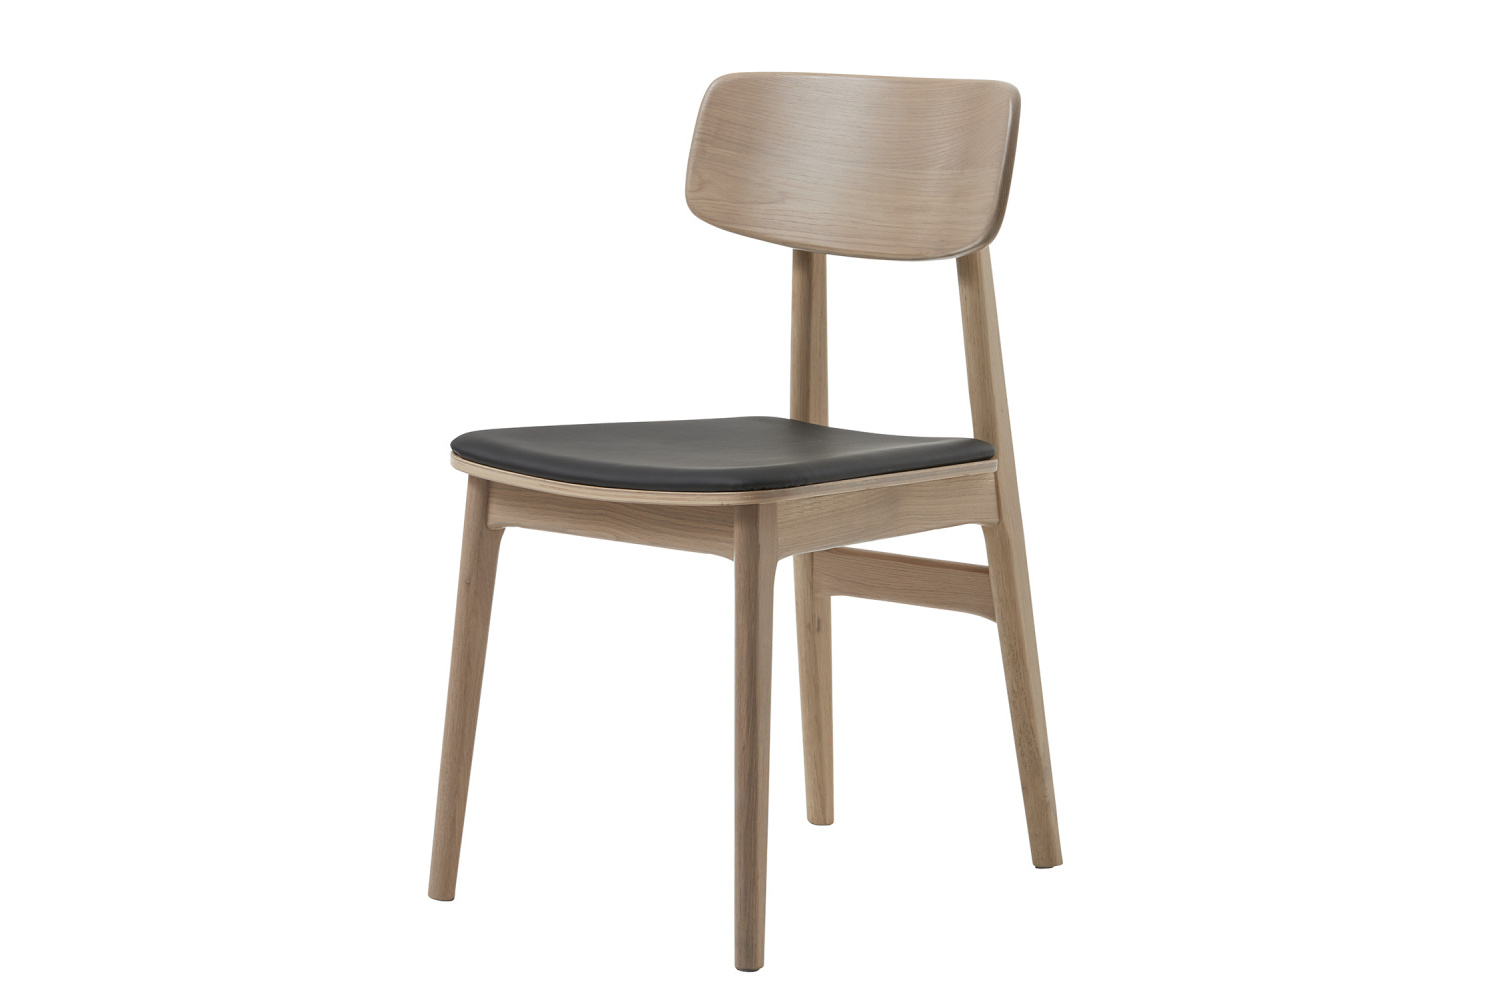 Furniria Designová židle Harper přírodní - černá